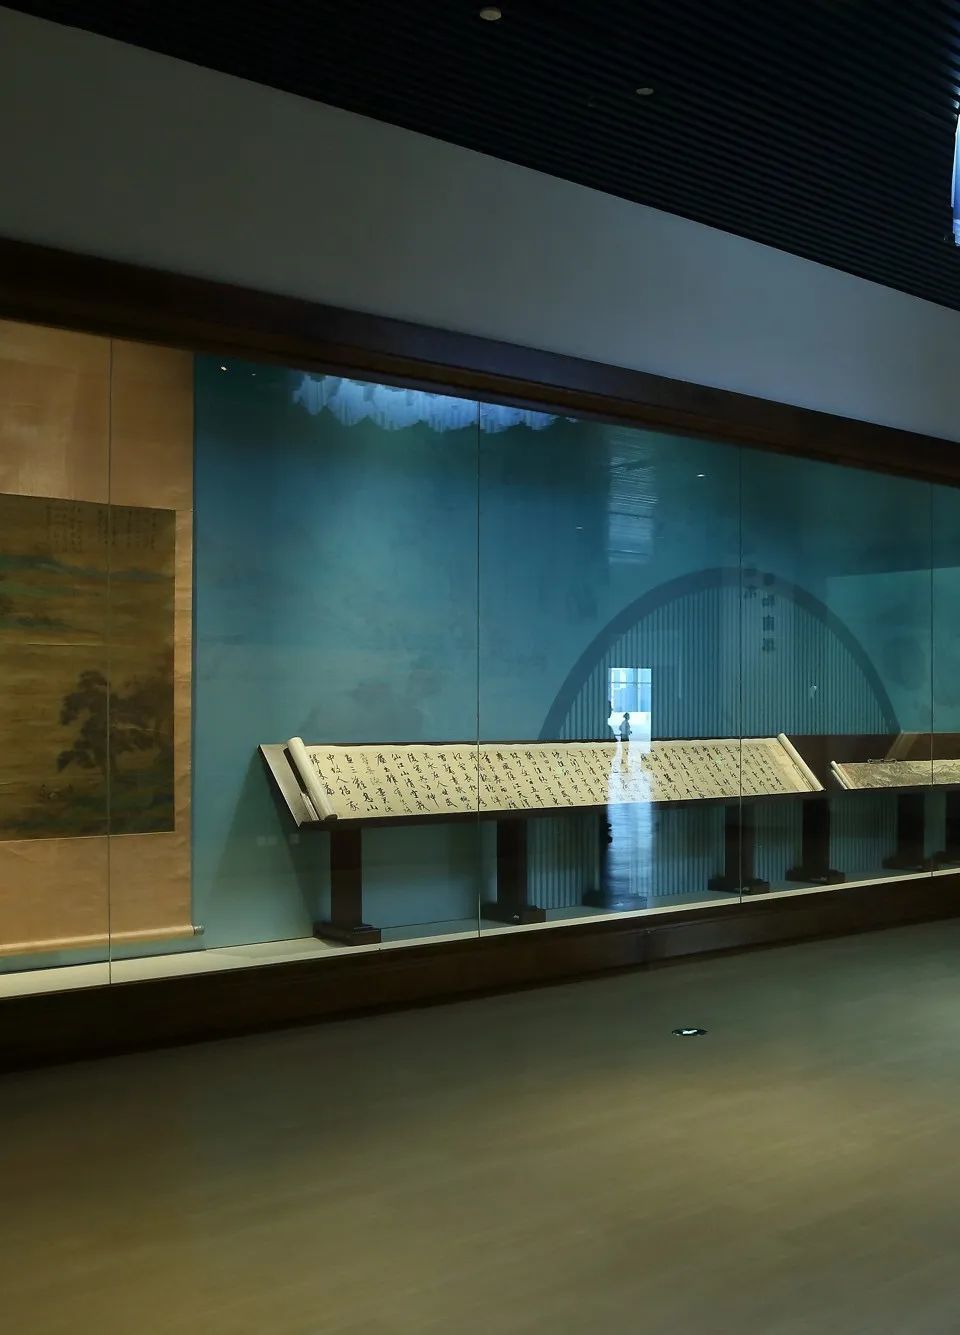 400＋文物呈现辽博史上规模最大特展，免费参观末代皇帝“带”出宫的镇馆之宝